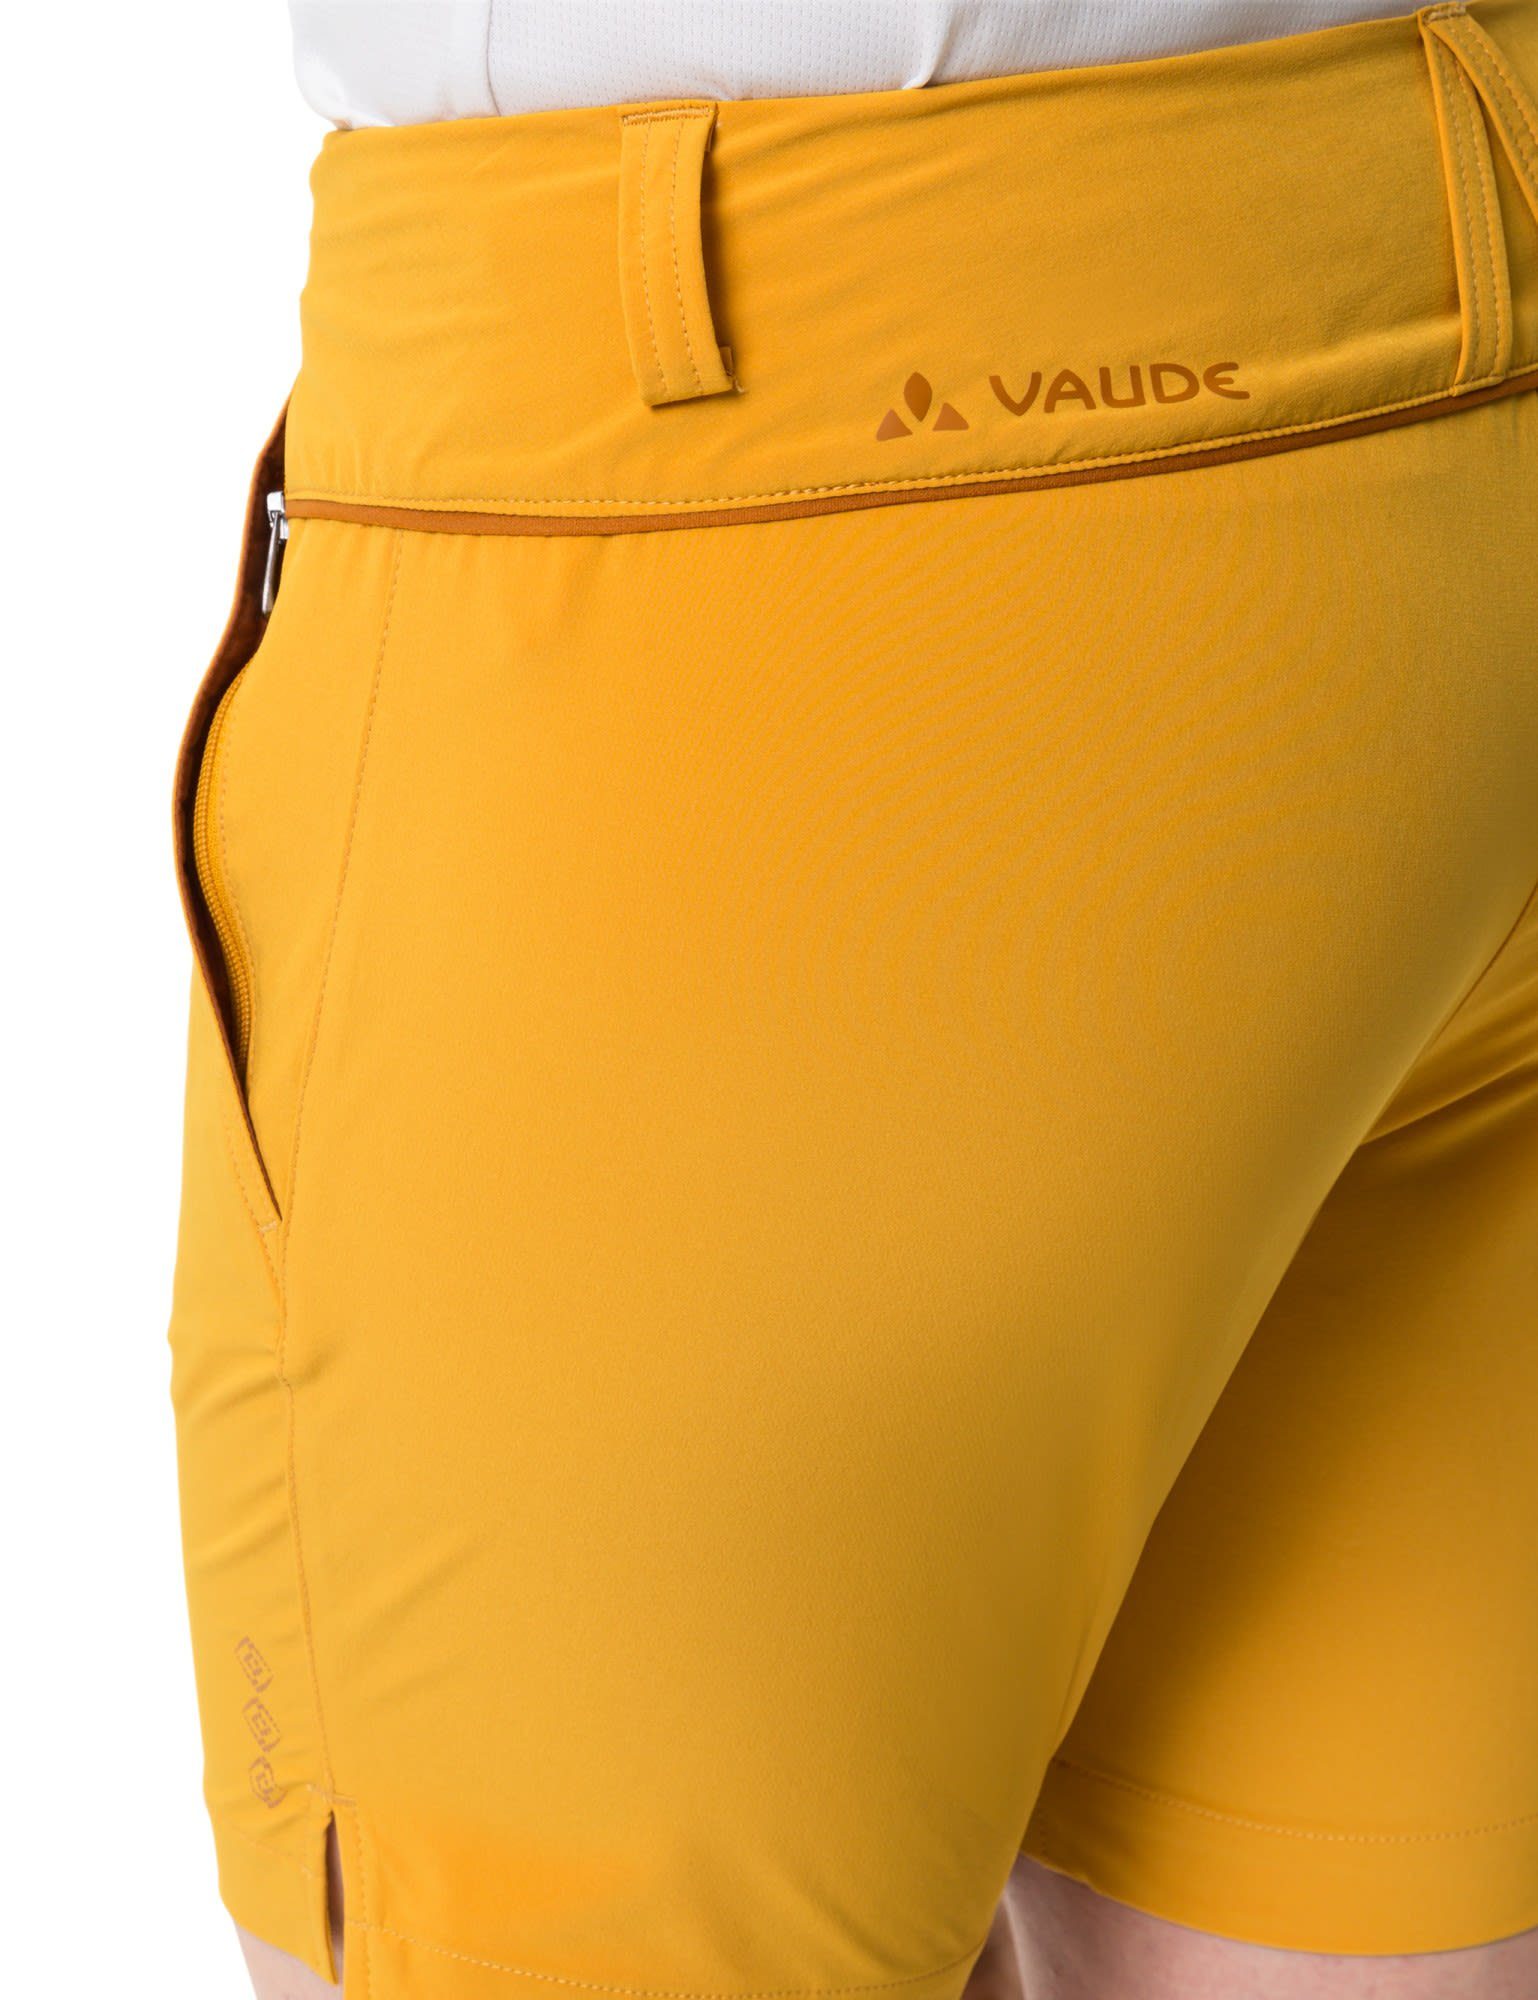 Damen Iii Shorts Womens Yellow Shorts Strandshorts Burnt VAUDE Vaude Skomer